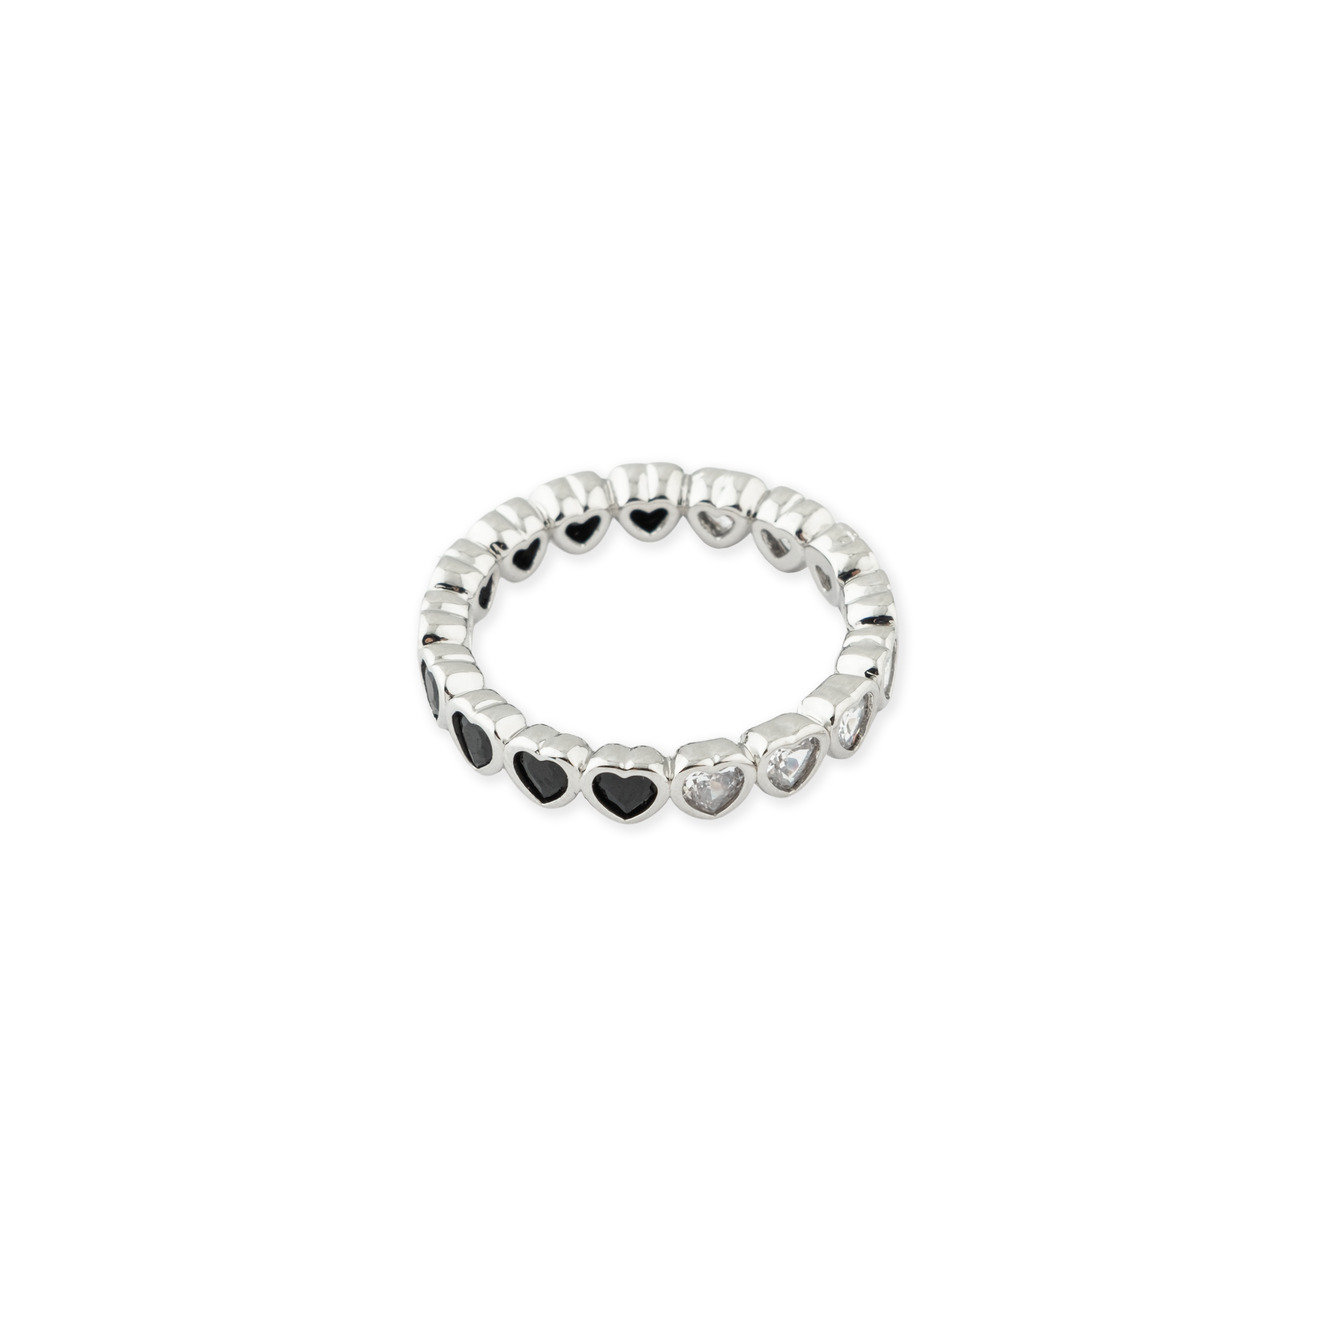 Herald Percy Серебристое кольцо из сердец с белыми и черными кристаллами herald percy кольцо с золотистыми кристаллами